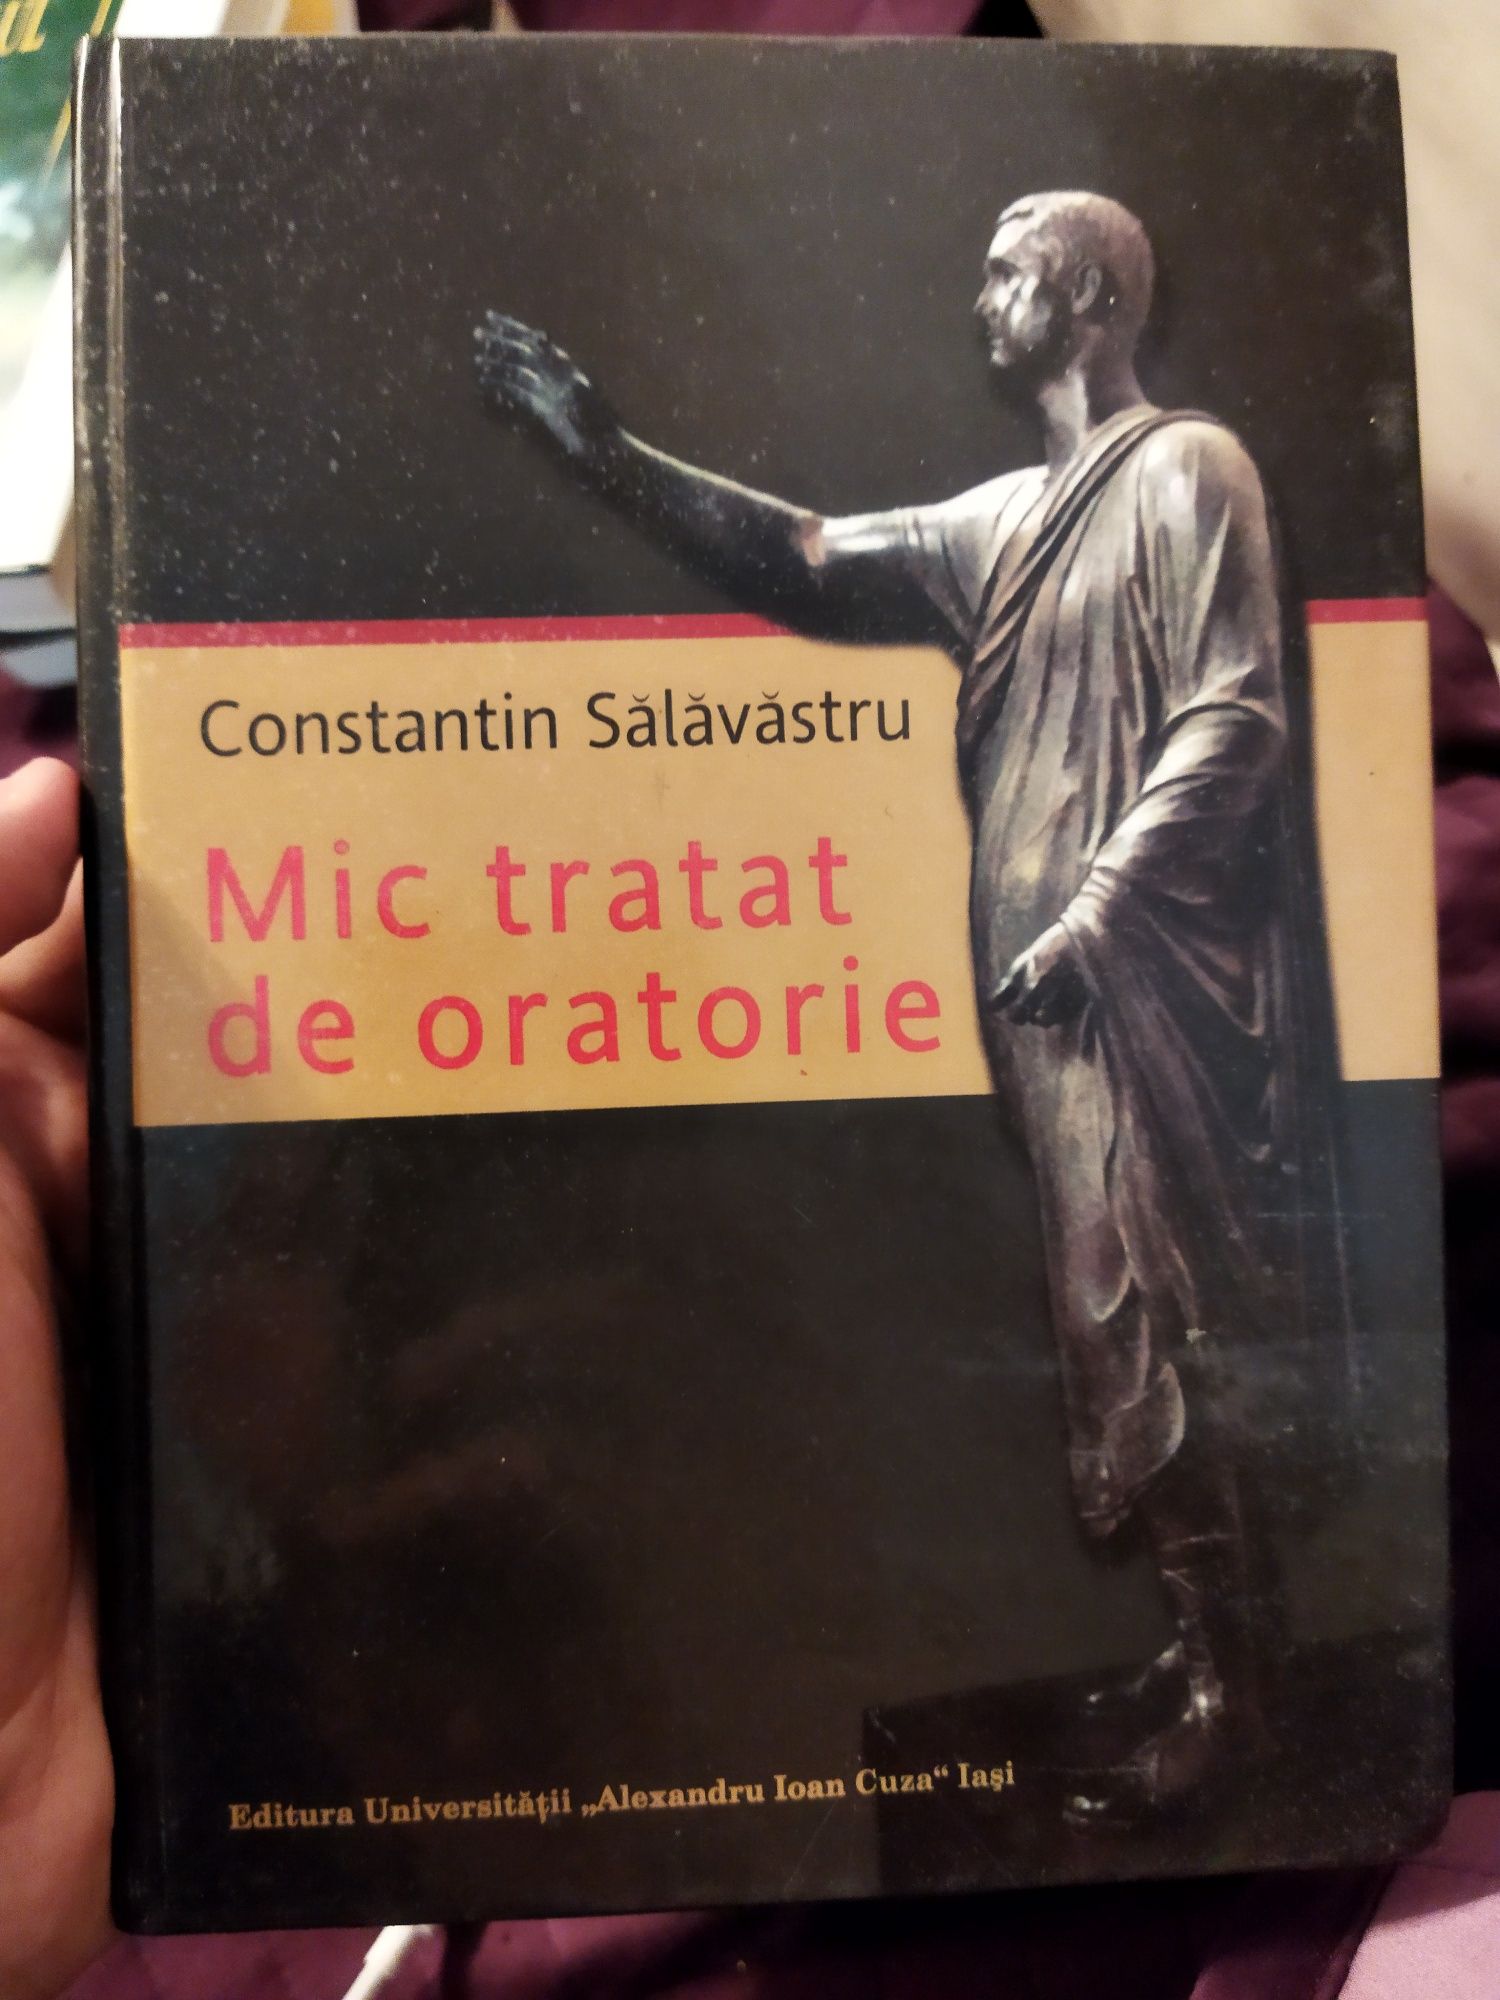 Cartea Mic tratat de oratorie de Constantin Sălăvăstru